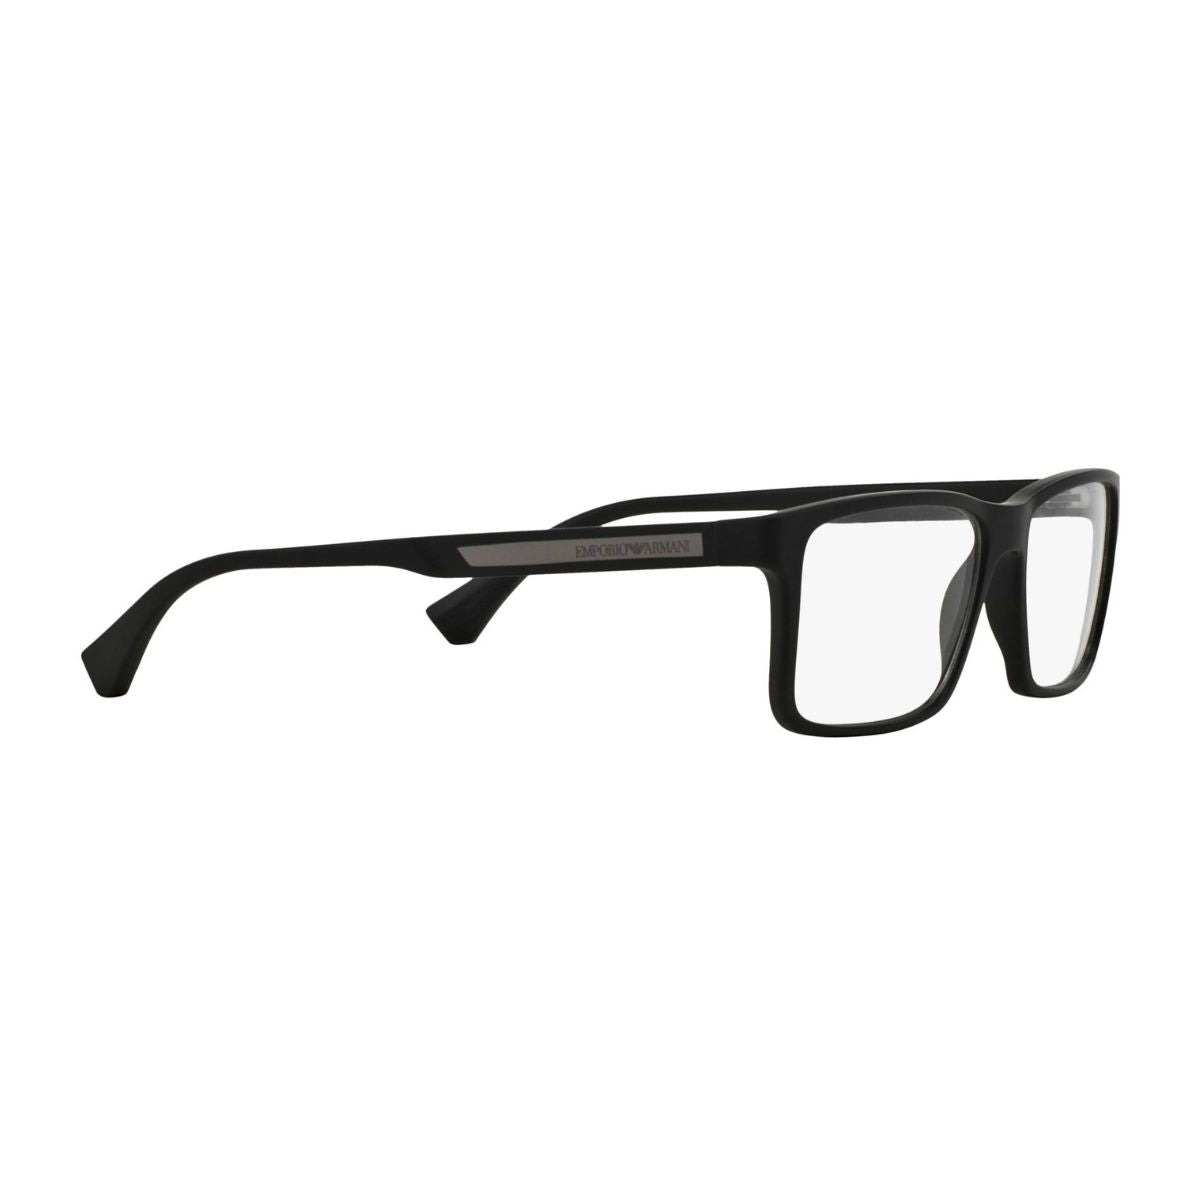 "Emporio Armani 3038 5063 Rectangle Eyewear Frame For Men's At Optorium"